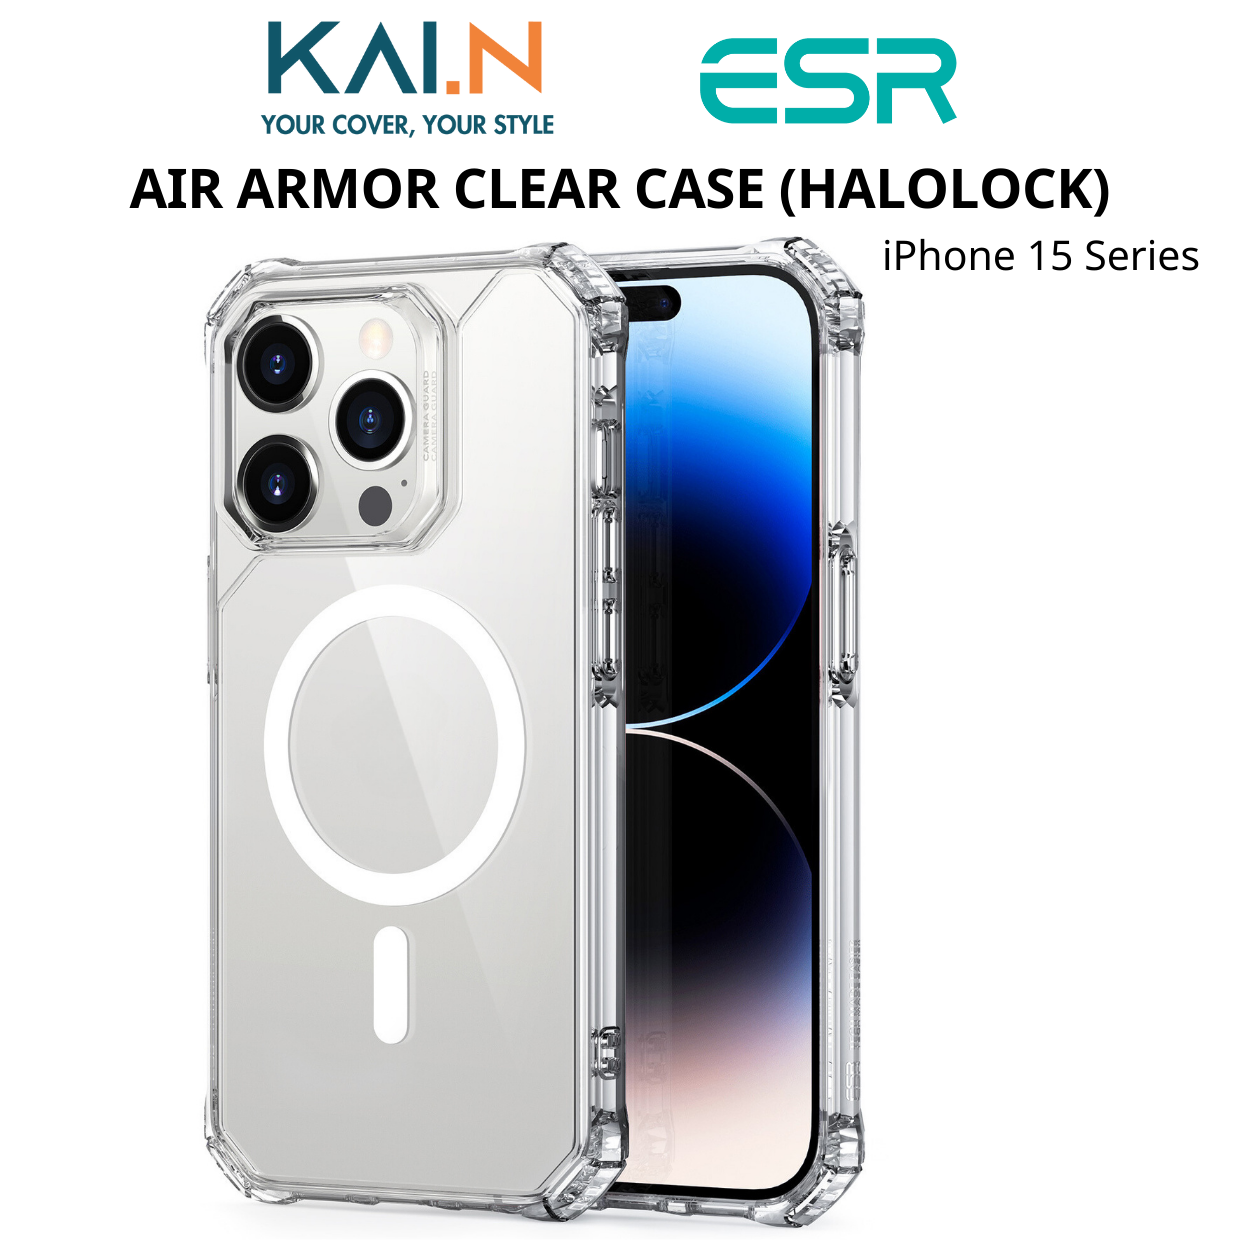  Ốp Lưng Hỗ Trợ Sạc Không Dây Từ Tính Dành Cho iPhone 15 Pro Max / iPhone 15 Pro, ESR Air Armor Clear Case (HaloLock) - HÀNG CHÍNH HÃNG